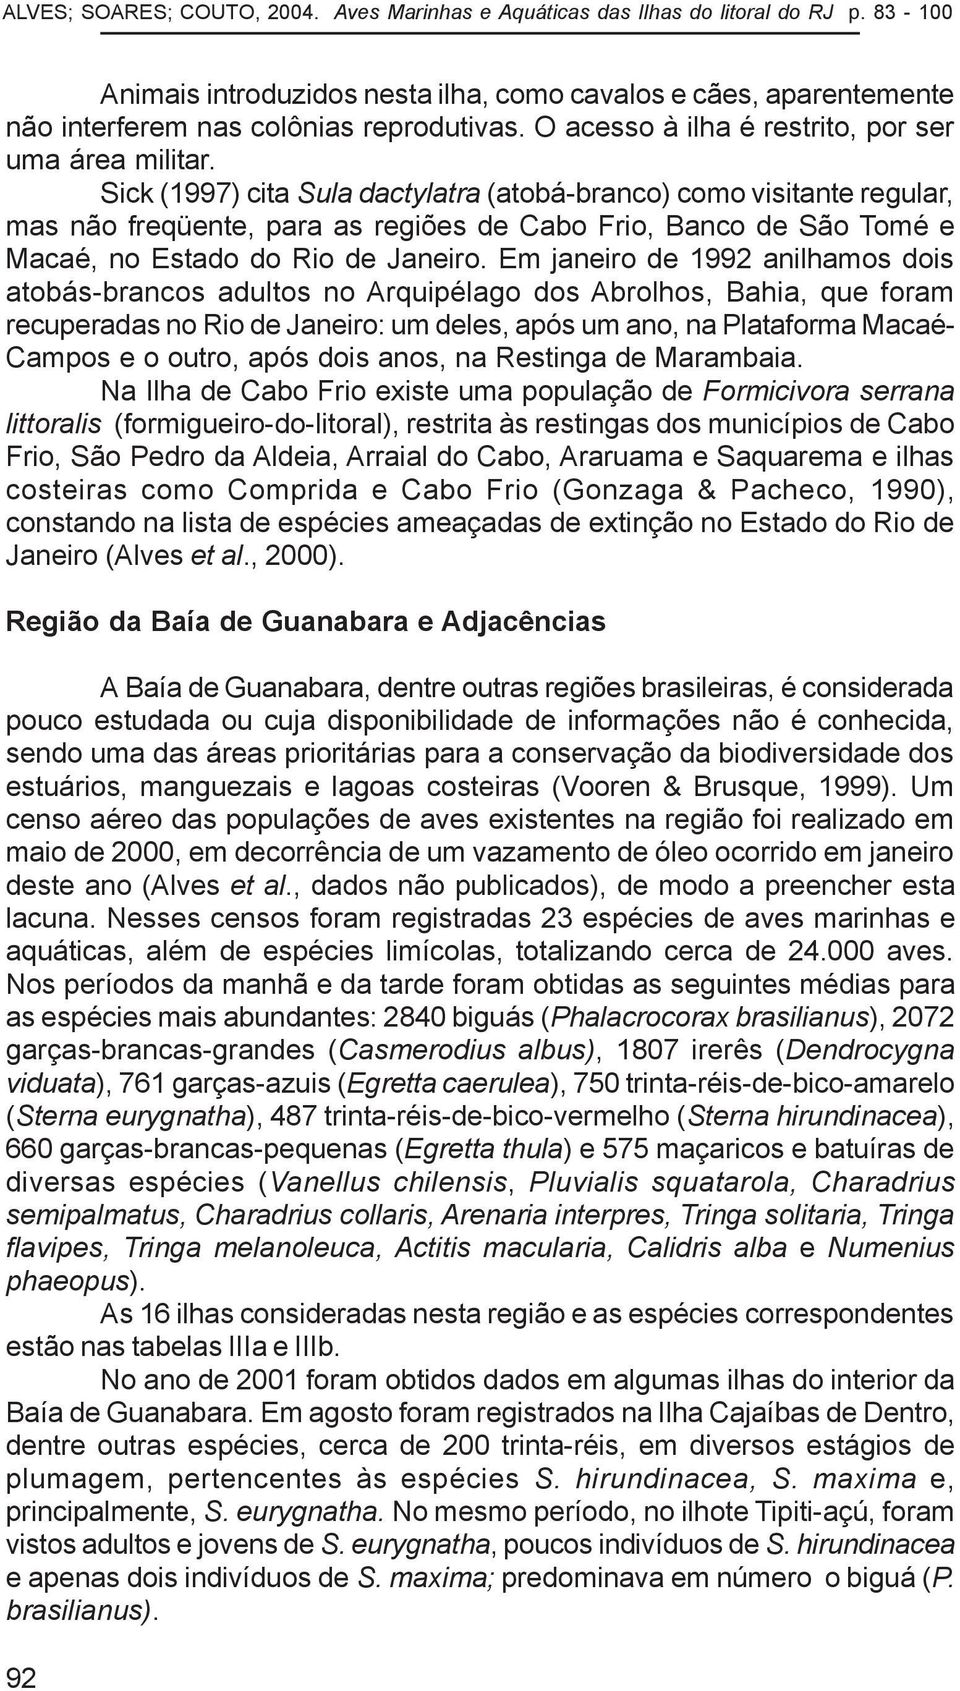 Sick (1997) cita Sula dactylatra (atobá-branco) como visitante regular, mas não freqüente, para as regiões de Cabo Frio, Banco de São Tomé e Macaé, no Estado do Rio de Janeiro.